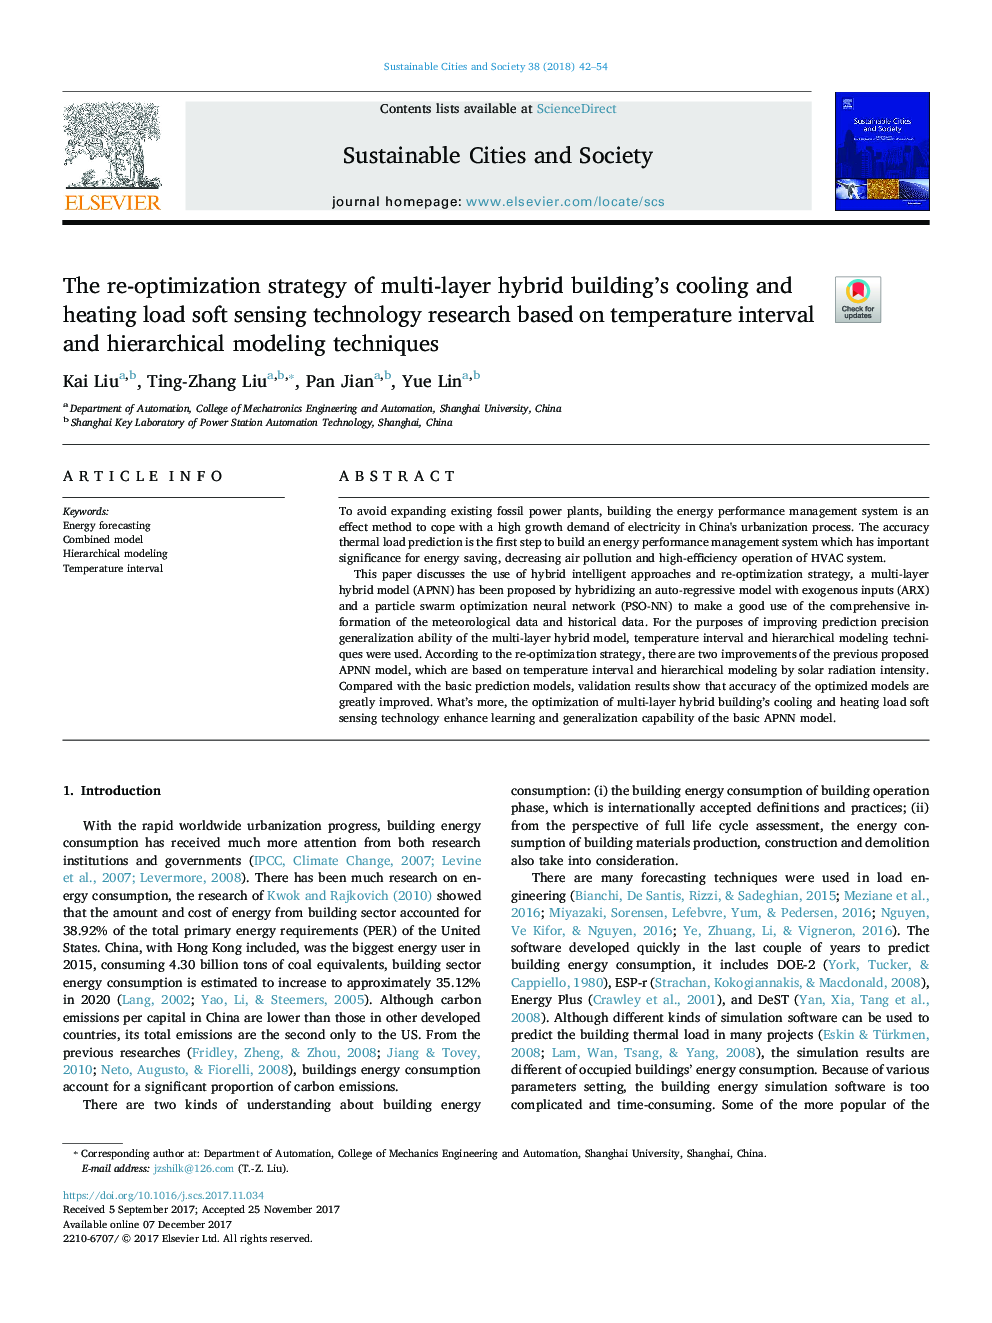 استراتژی دوباره بهینه سازی تحقیق تکنولوژی سنجش نرم افزاری خنک کننده و گرمایی ساختمان هیبرید چند لایه بر اساس بازه دما و تکنیک های مدل سازی سلسله مراتبی 